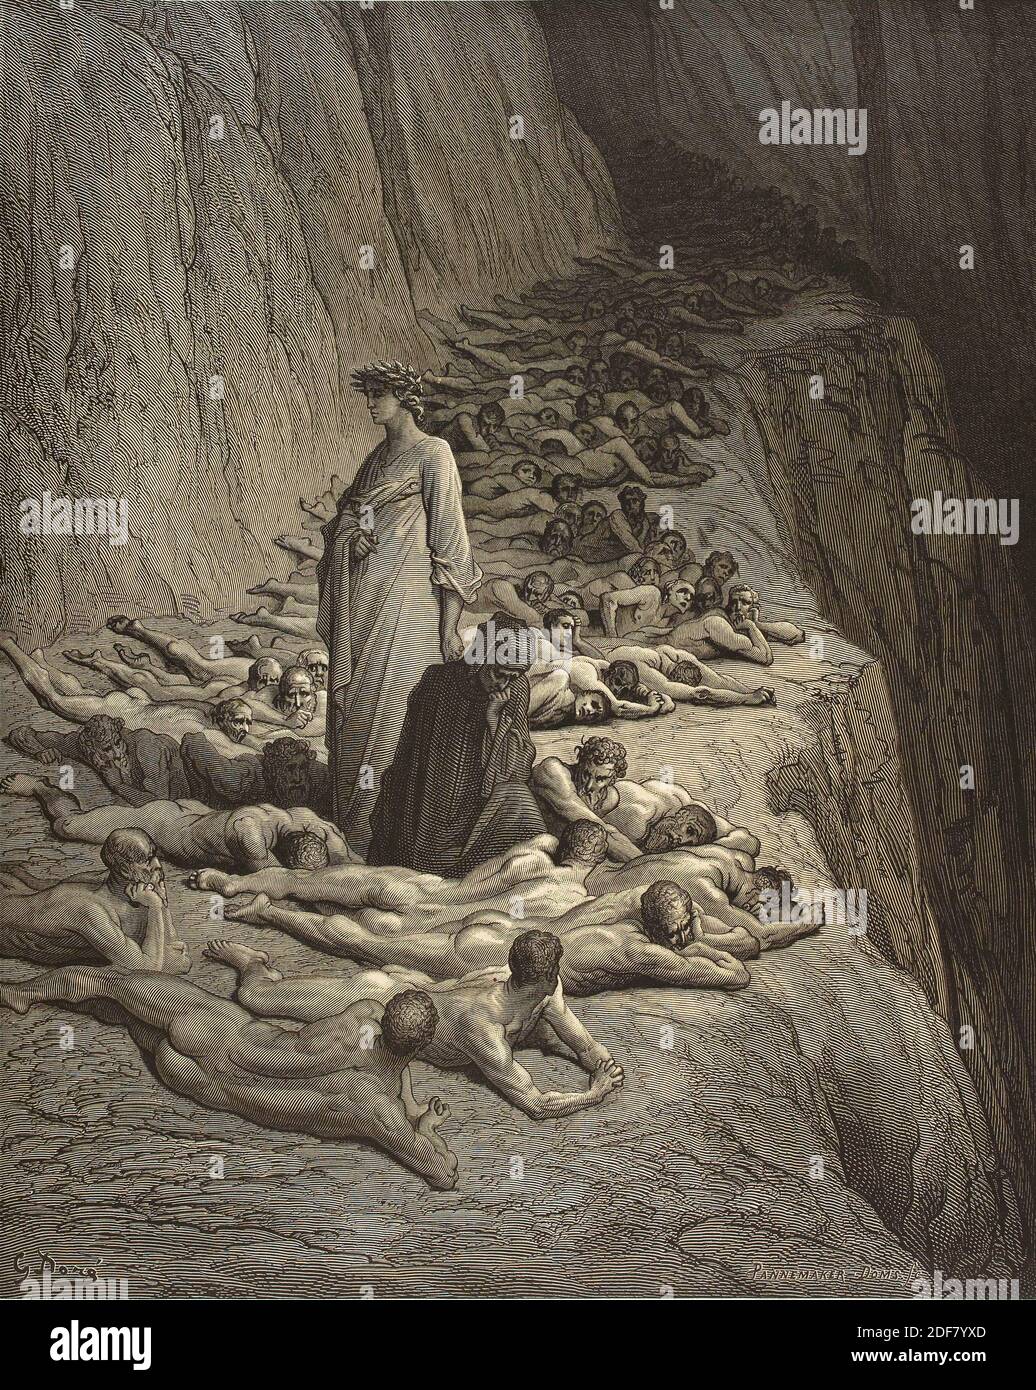 Dante - Divina Commedia - Purgatorio - Ilustración de Gustave Dorè - Canto XIX - estinoso Foto de stock